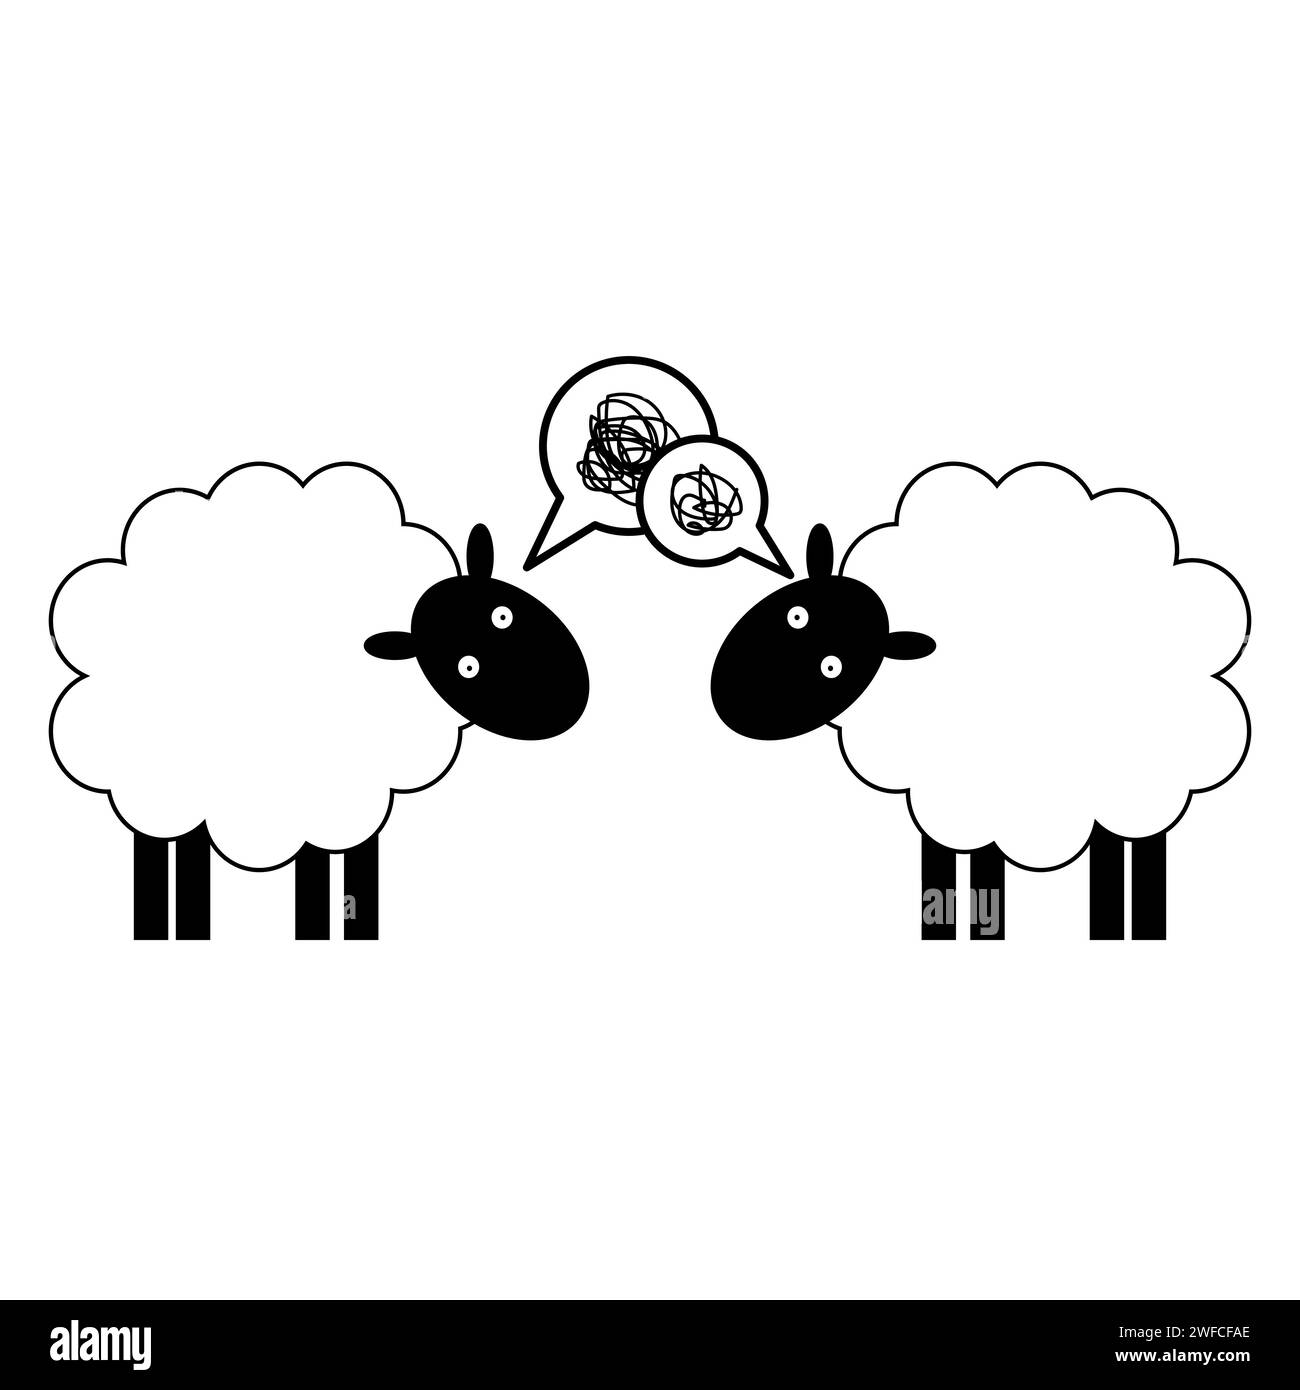 Personaggio dei cartoni animati due pecore su sfondo bianco. Illustrazione vettoriale. immagine stock. EPS 10. Illustrazione Vettoriale